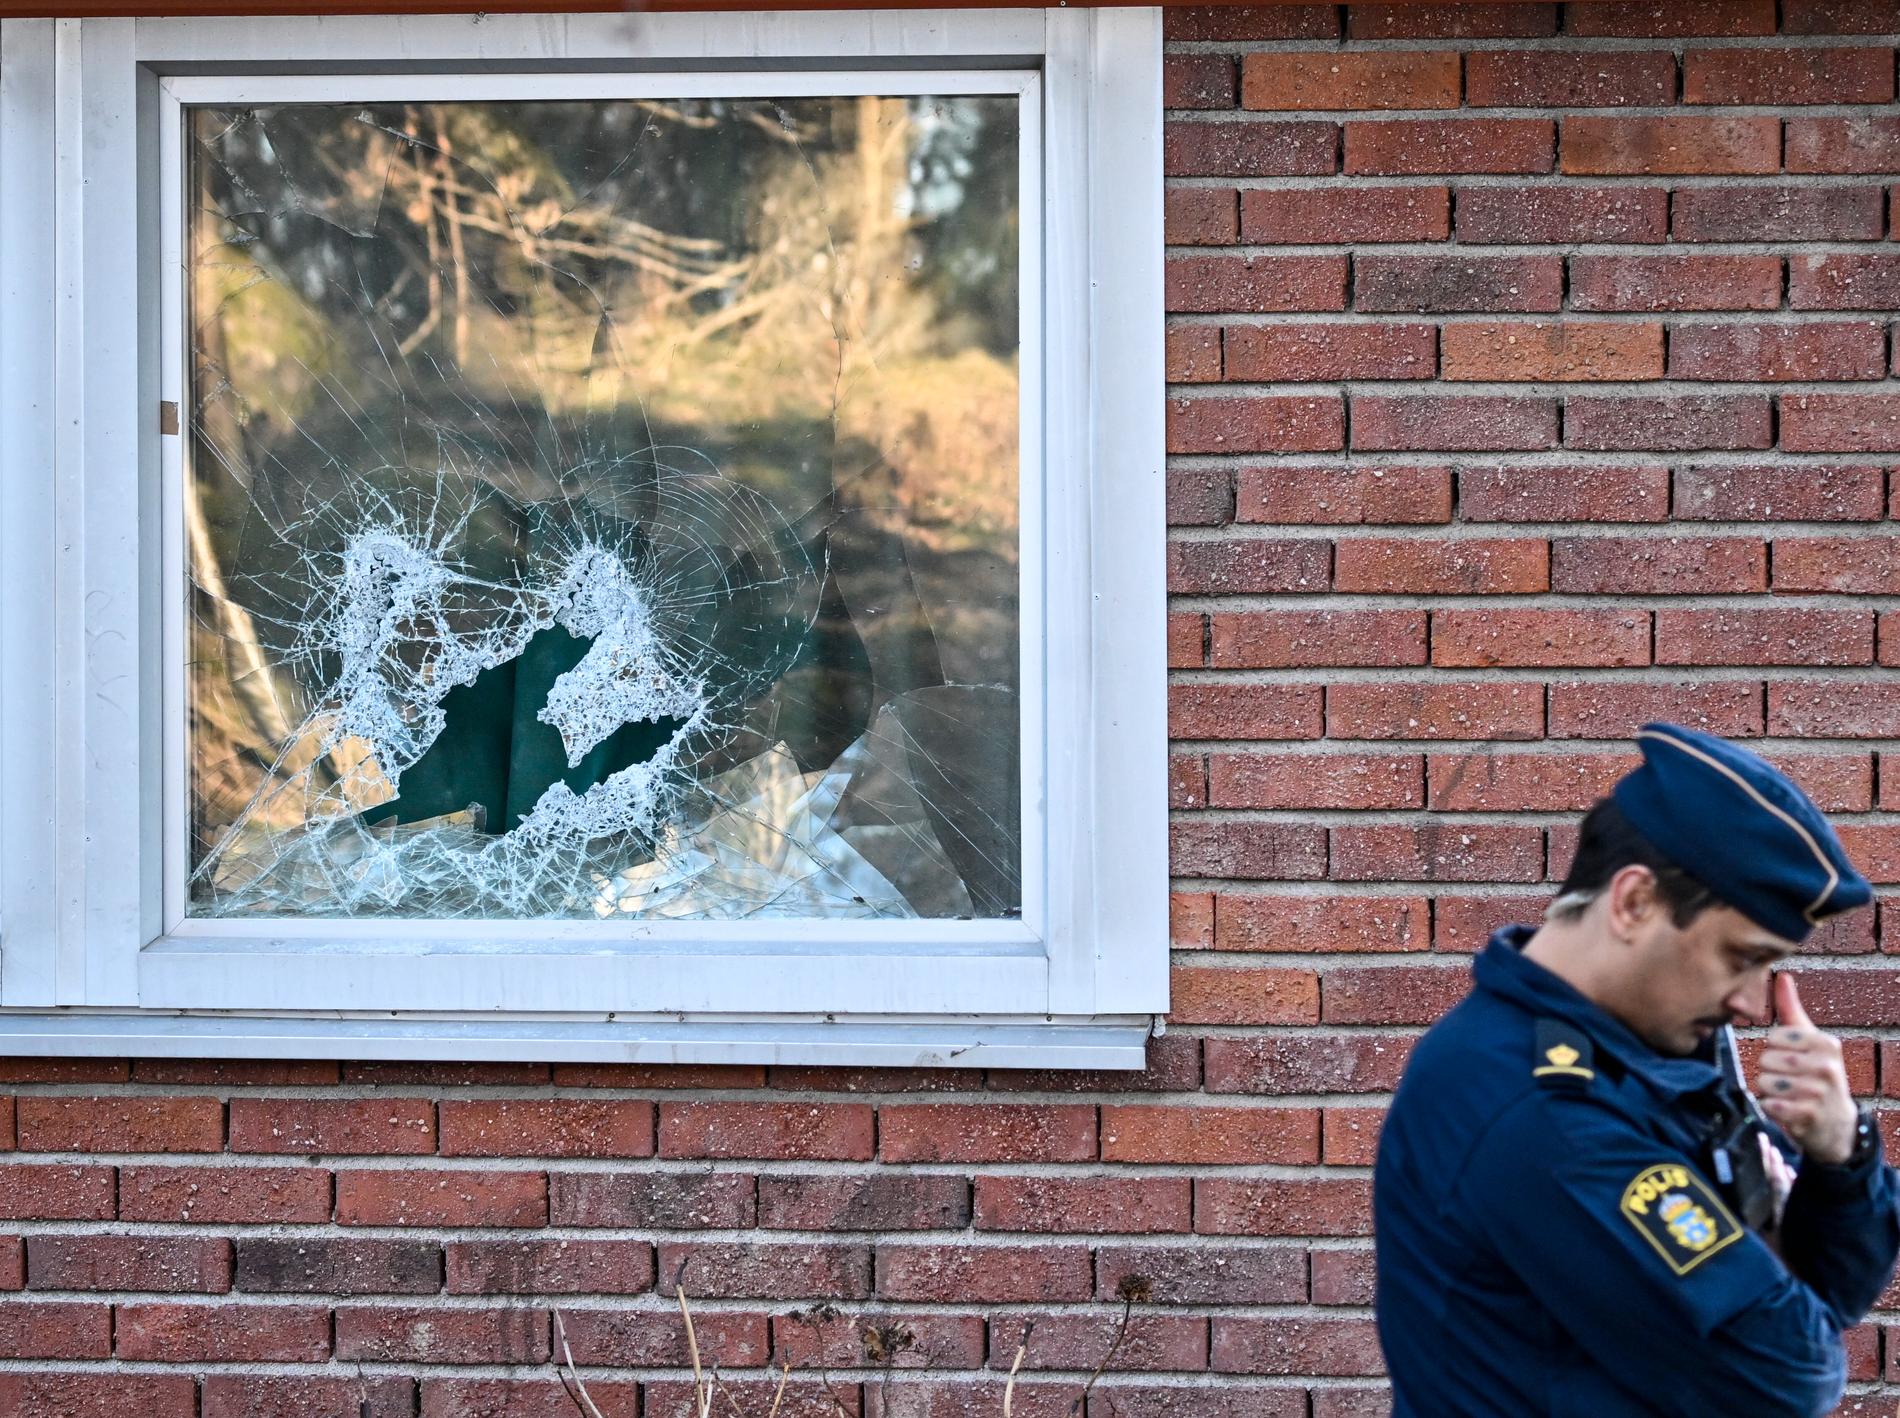 Brytmärken på dörrar och krossade fönster vittnar om polisens insats. Arkivbild.